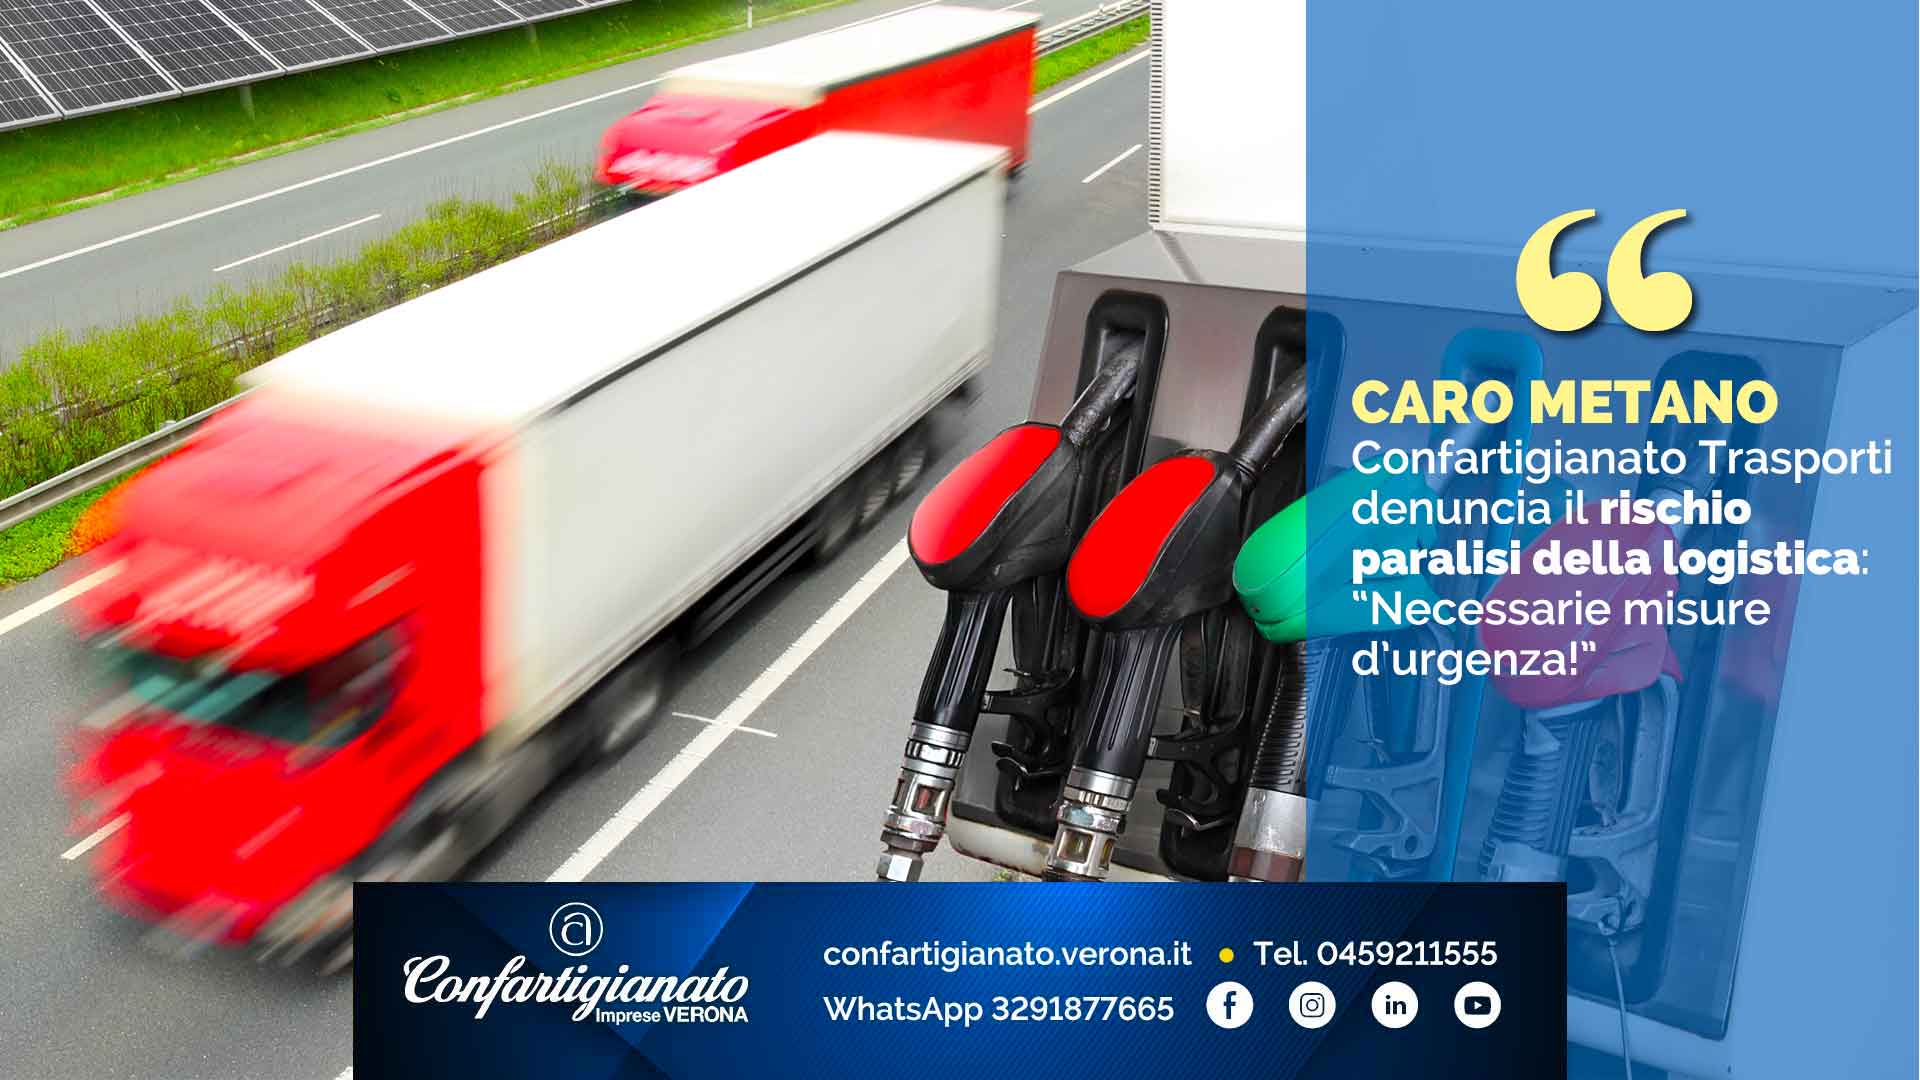 CARO METANO - Confartigianato Trasporti denuncia il rischio paralisi della logistica: “Necessarie misure d’urgenza”